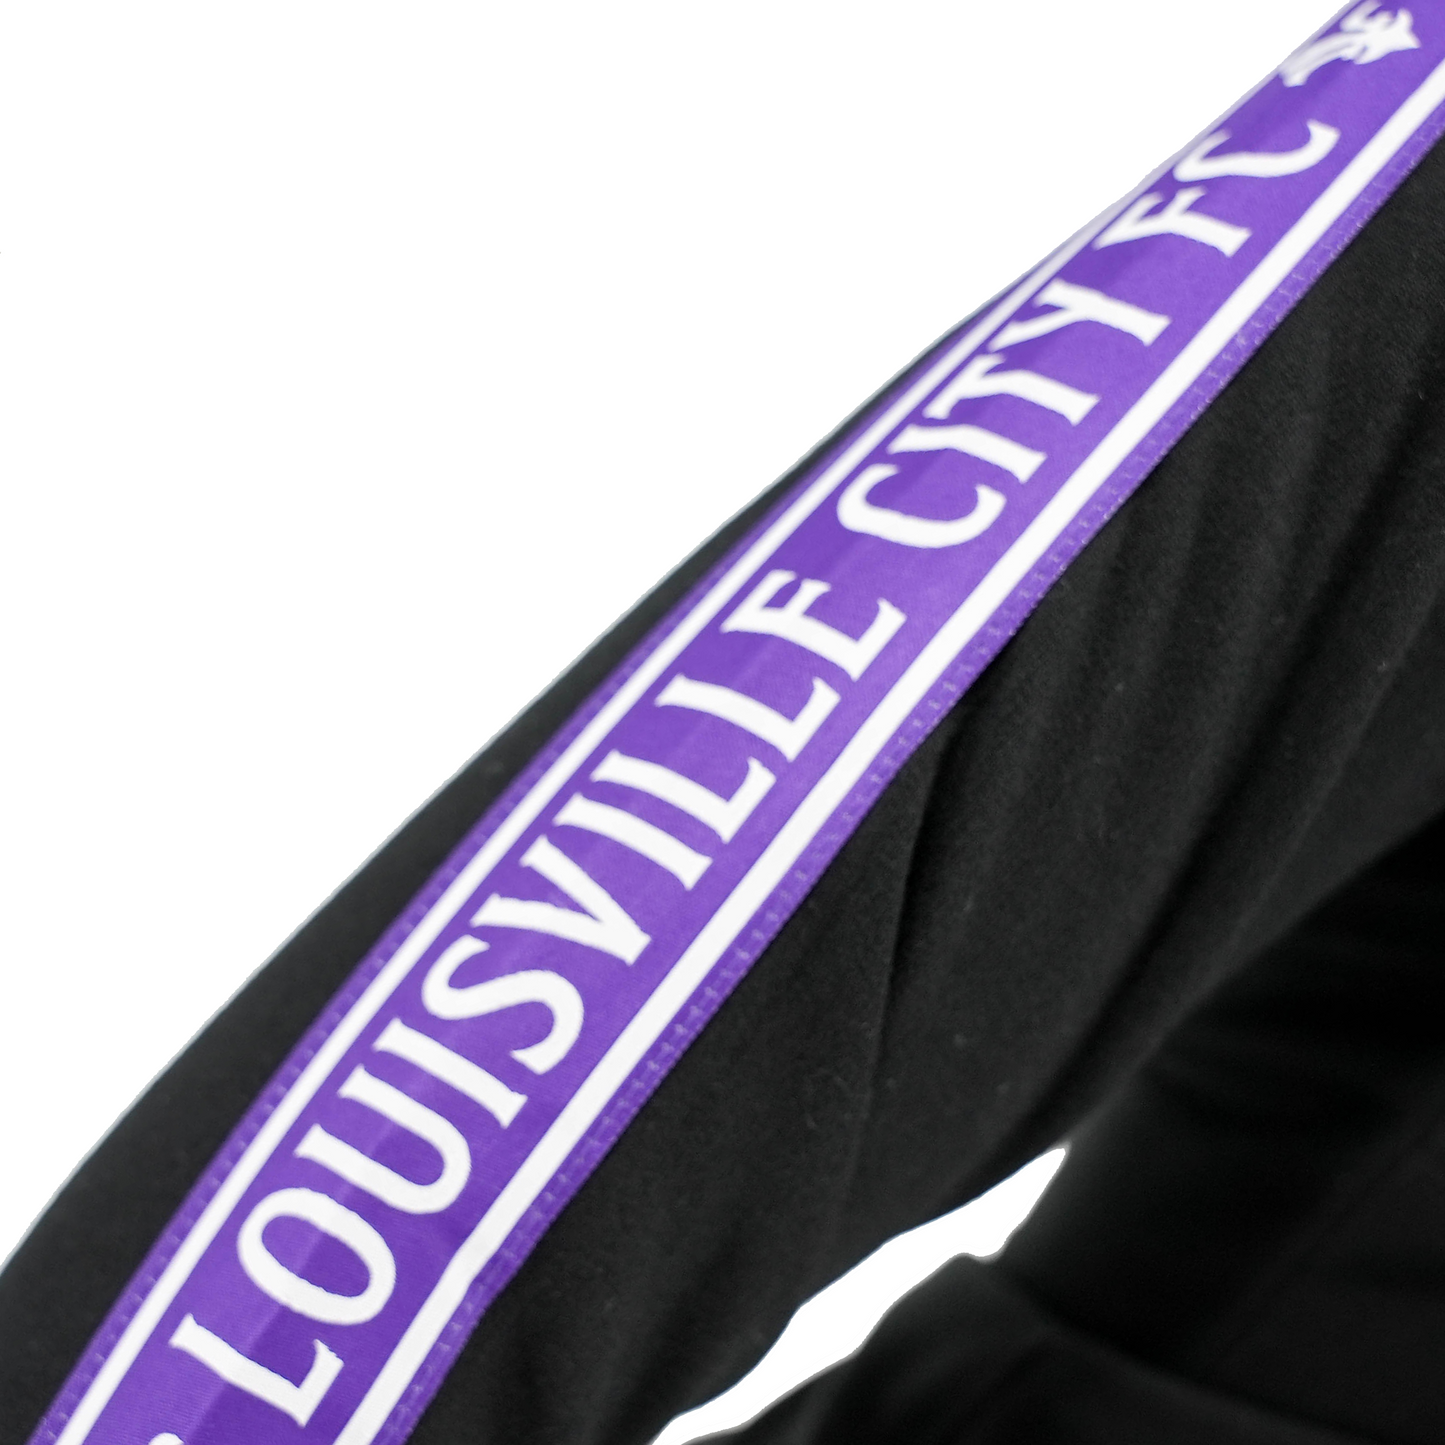 LouCity Youth Sideline Collection Full Zip Hooded Sweatshirt